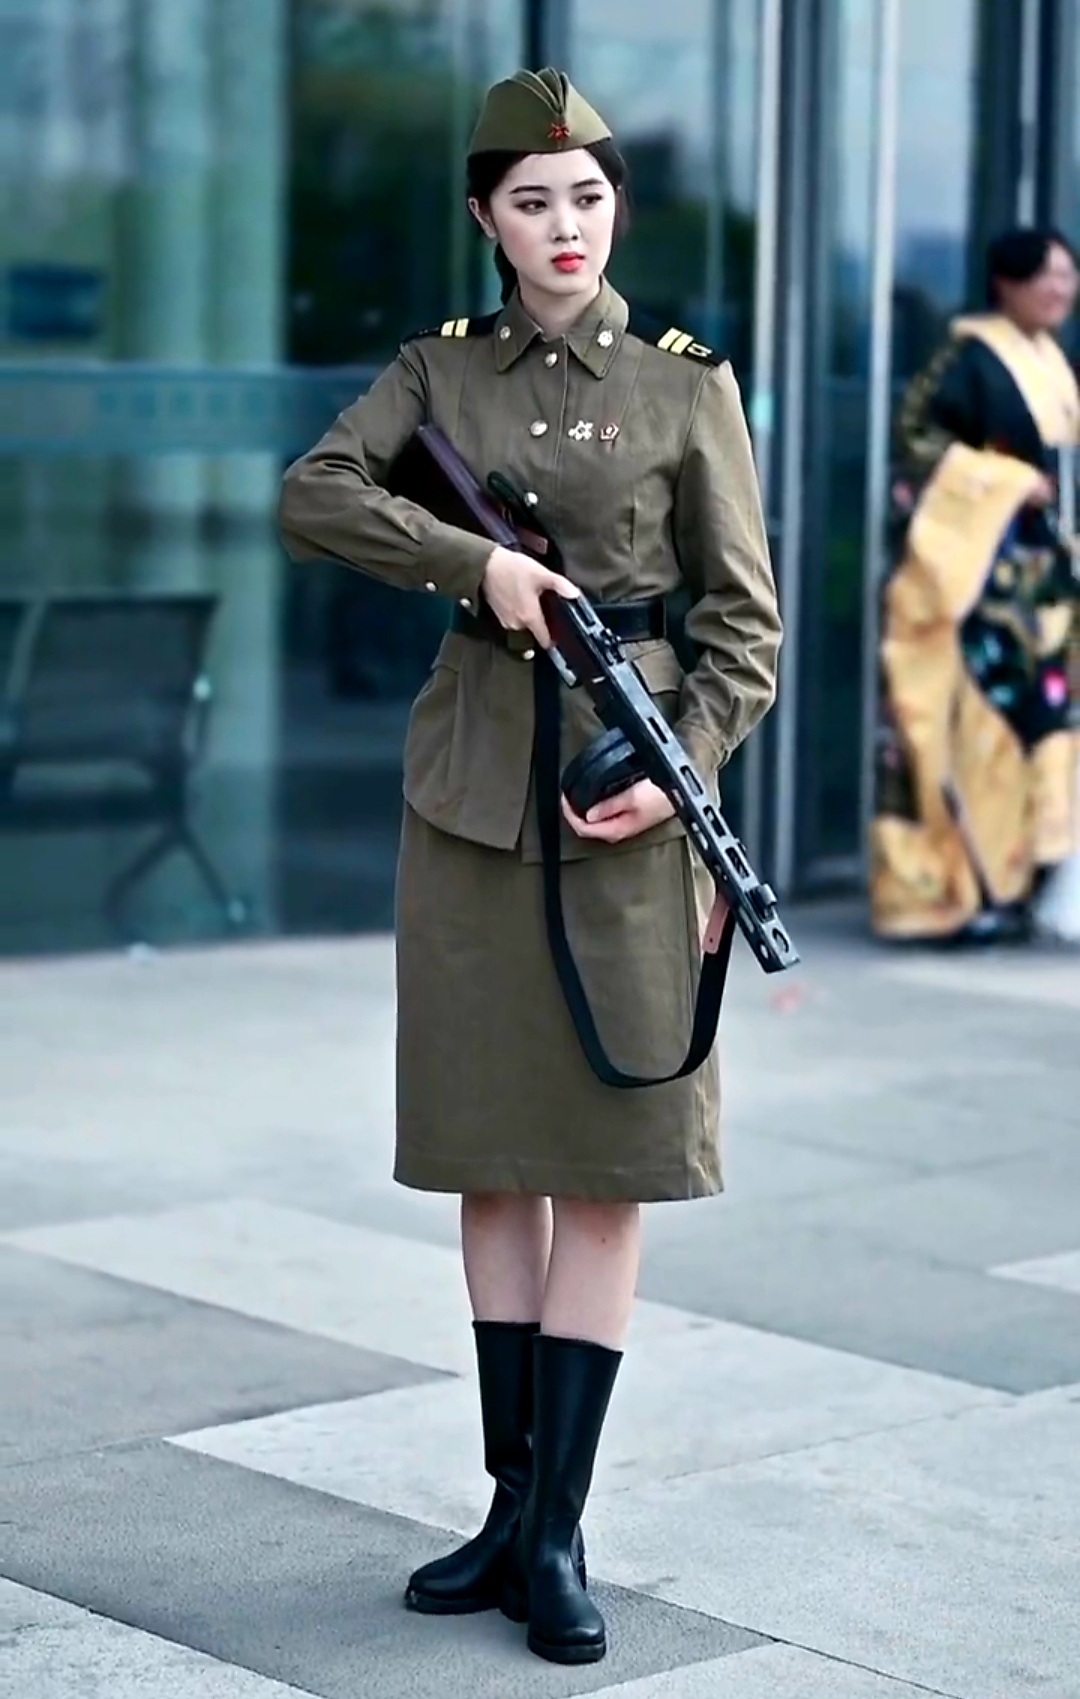 Soviet female soldier costume by kagomasa on DeviantArt